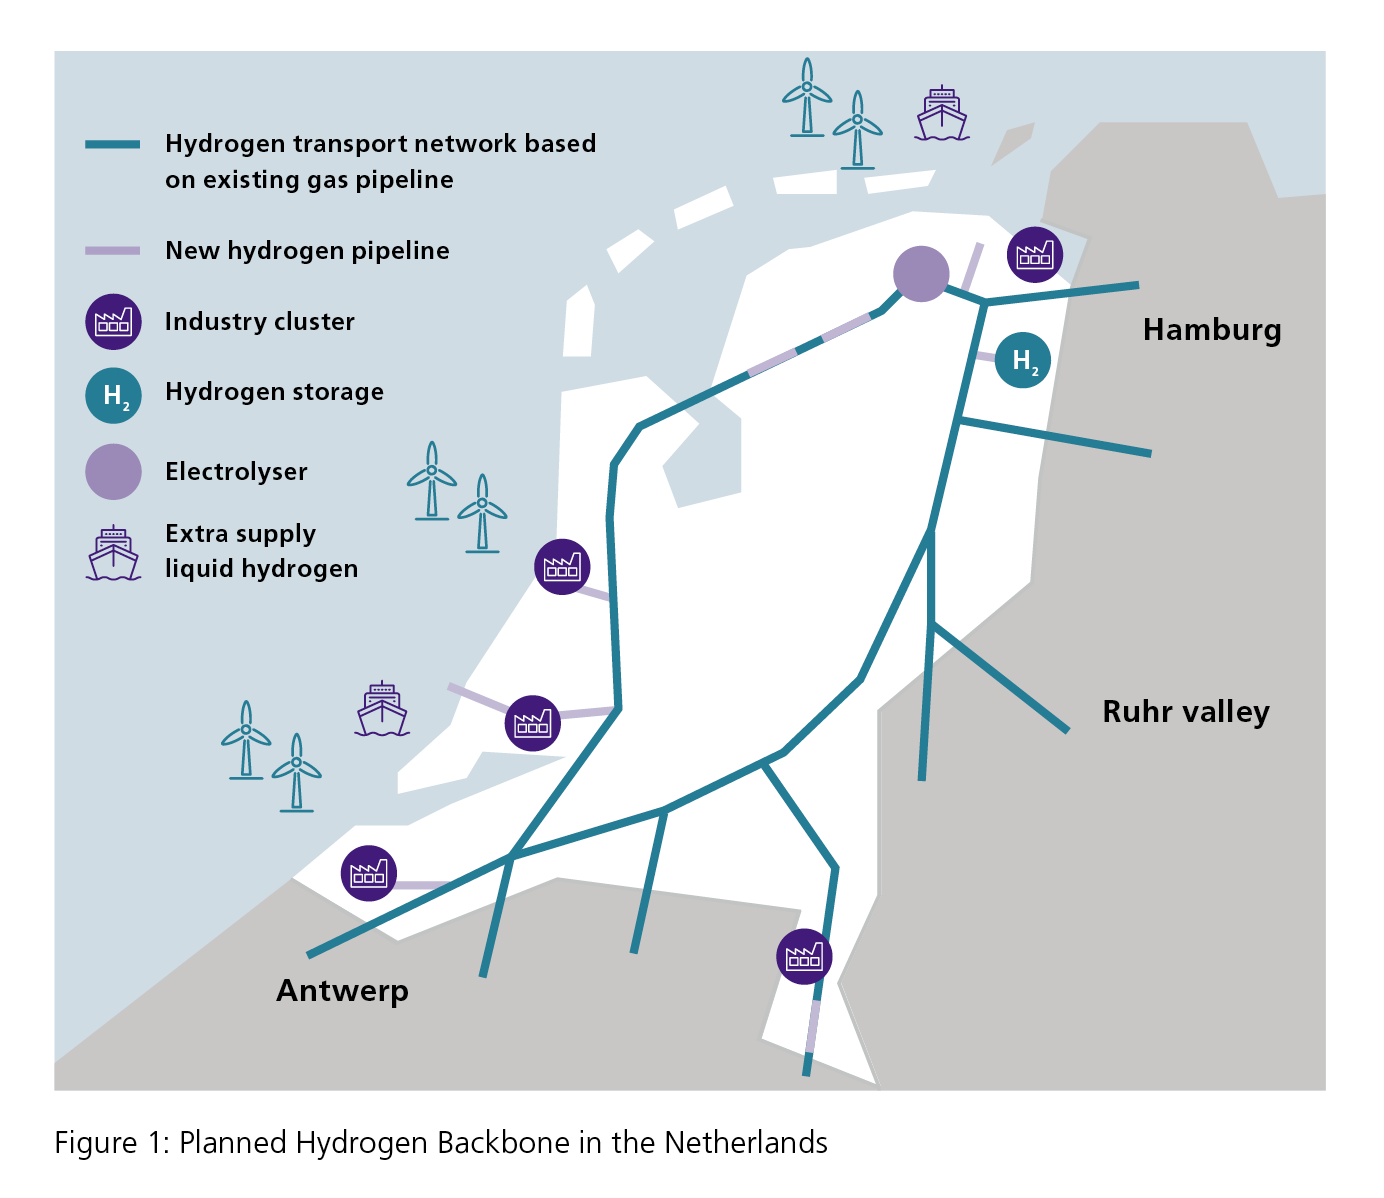 planned Hydrogen Backbone in the Netherlands (source: www.gasunie.nl)